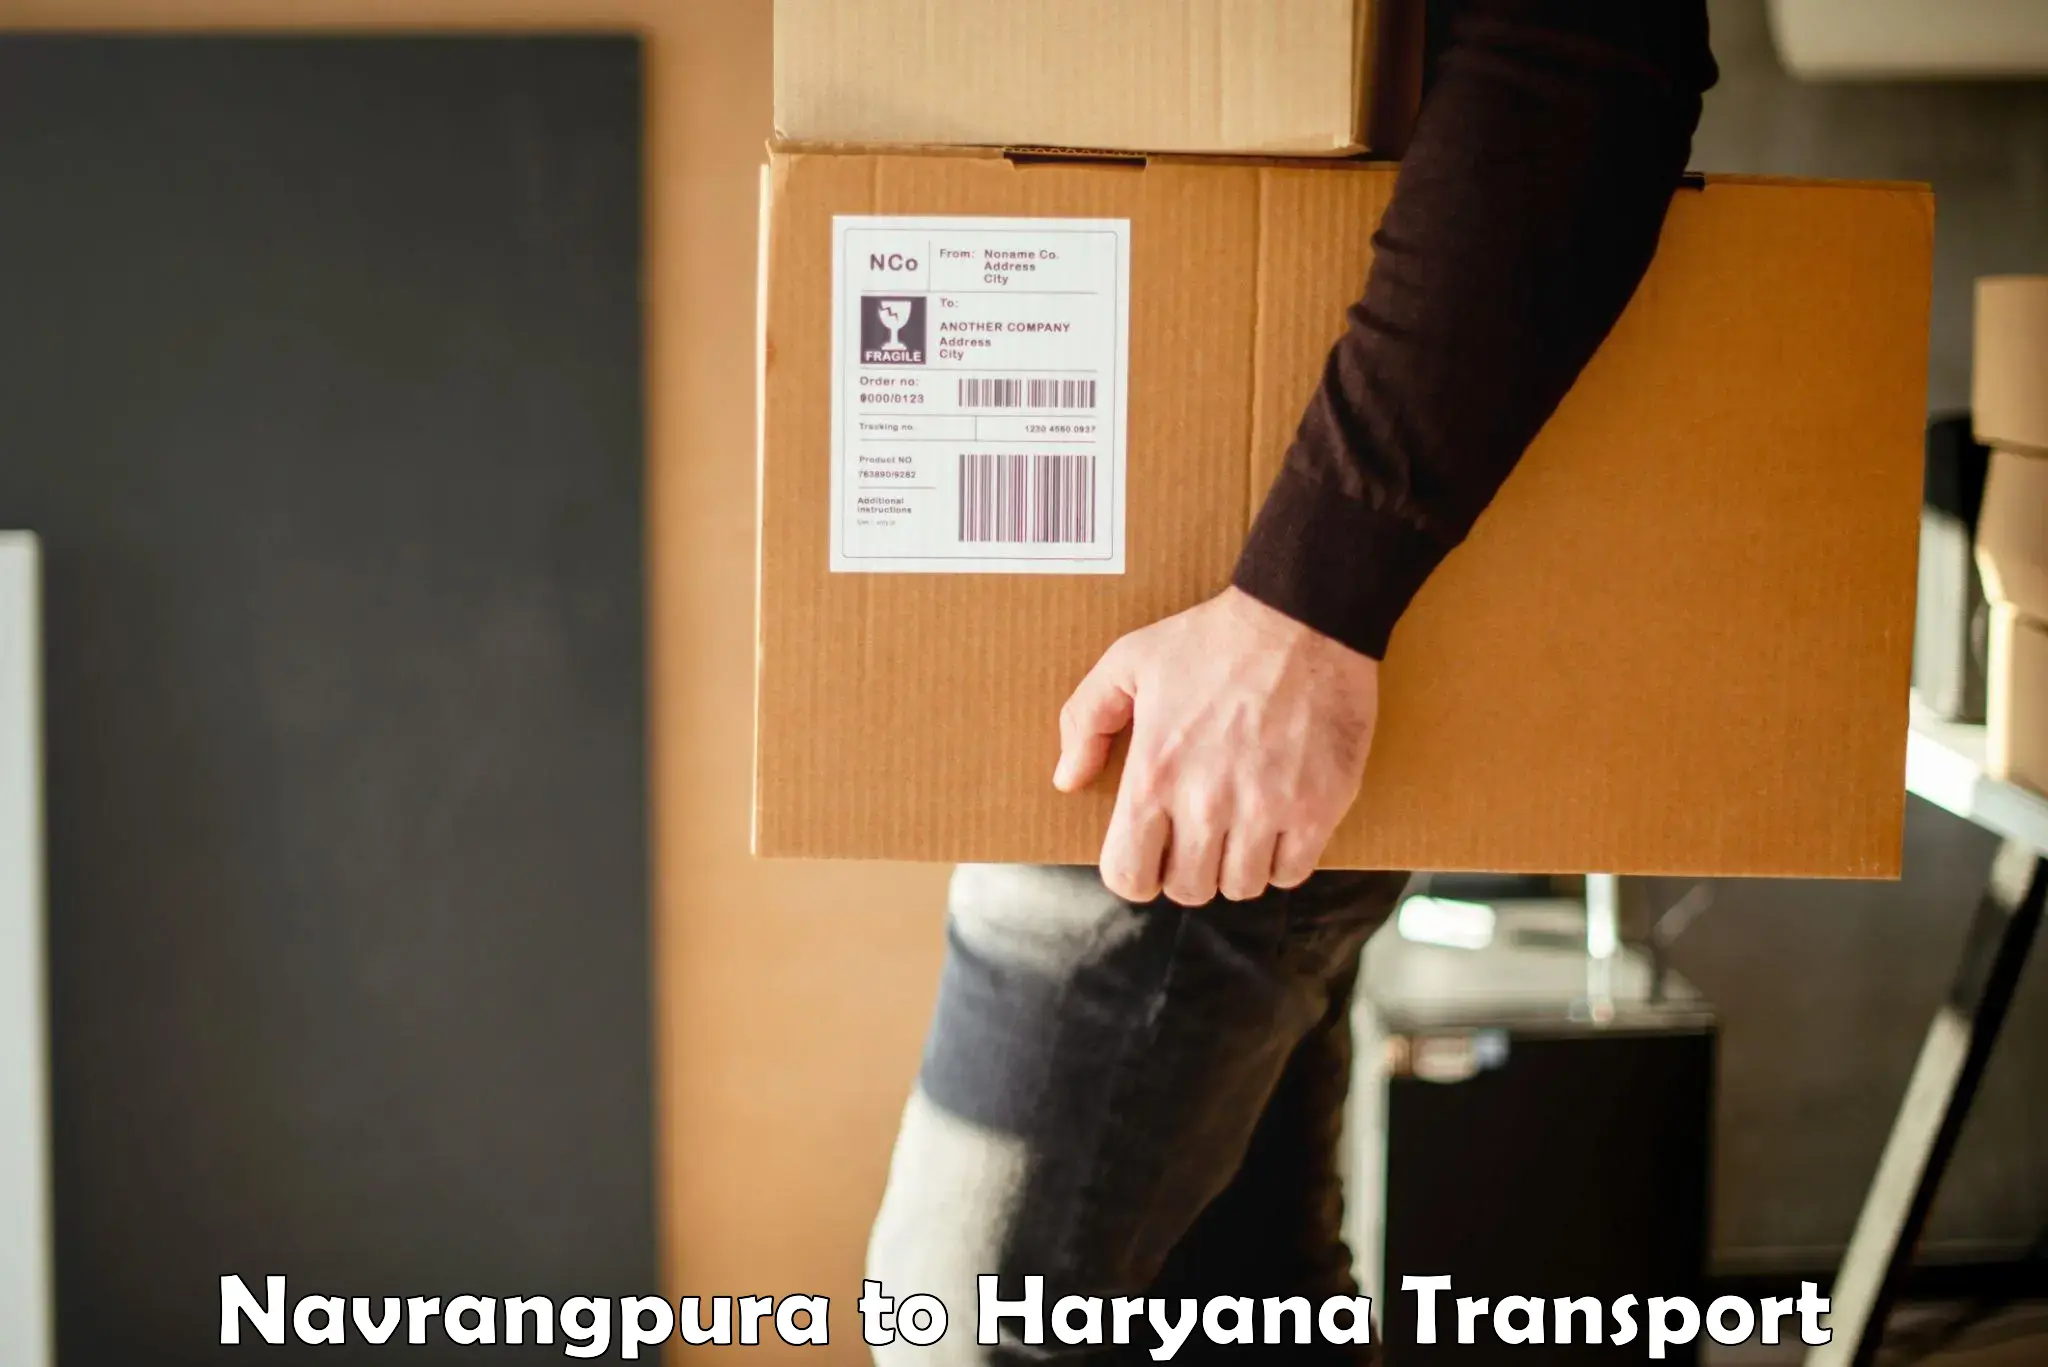 Truck transport companies in India Navrangpura to Chandi Rohtak